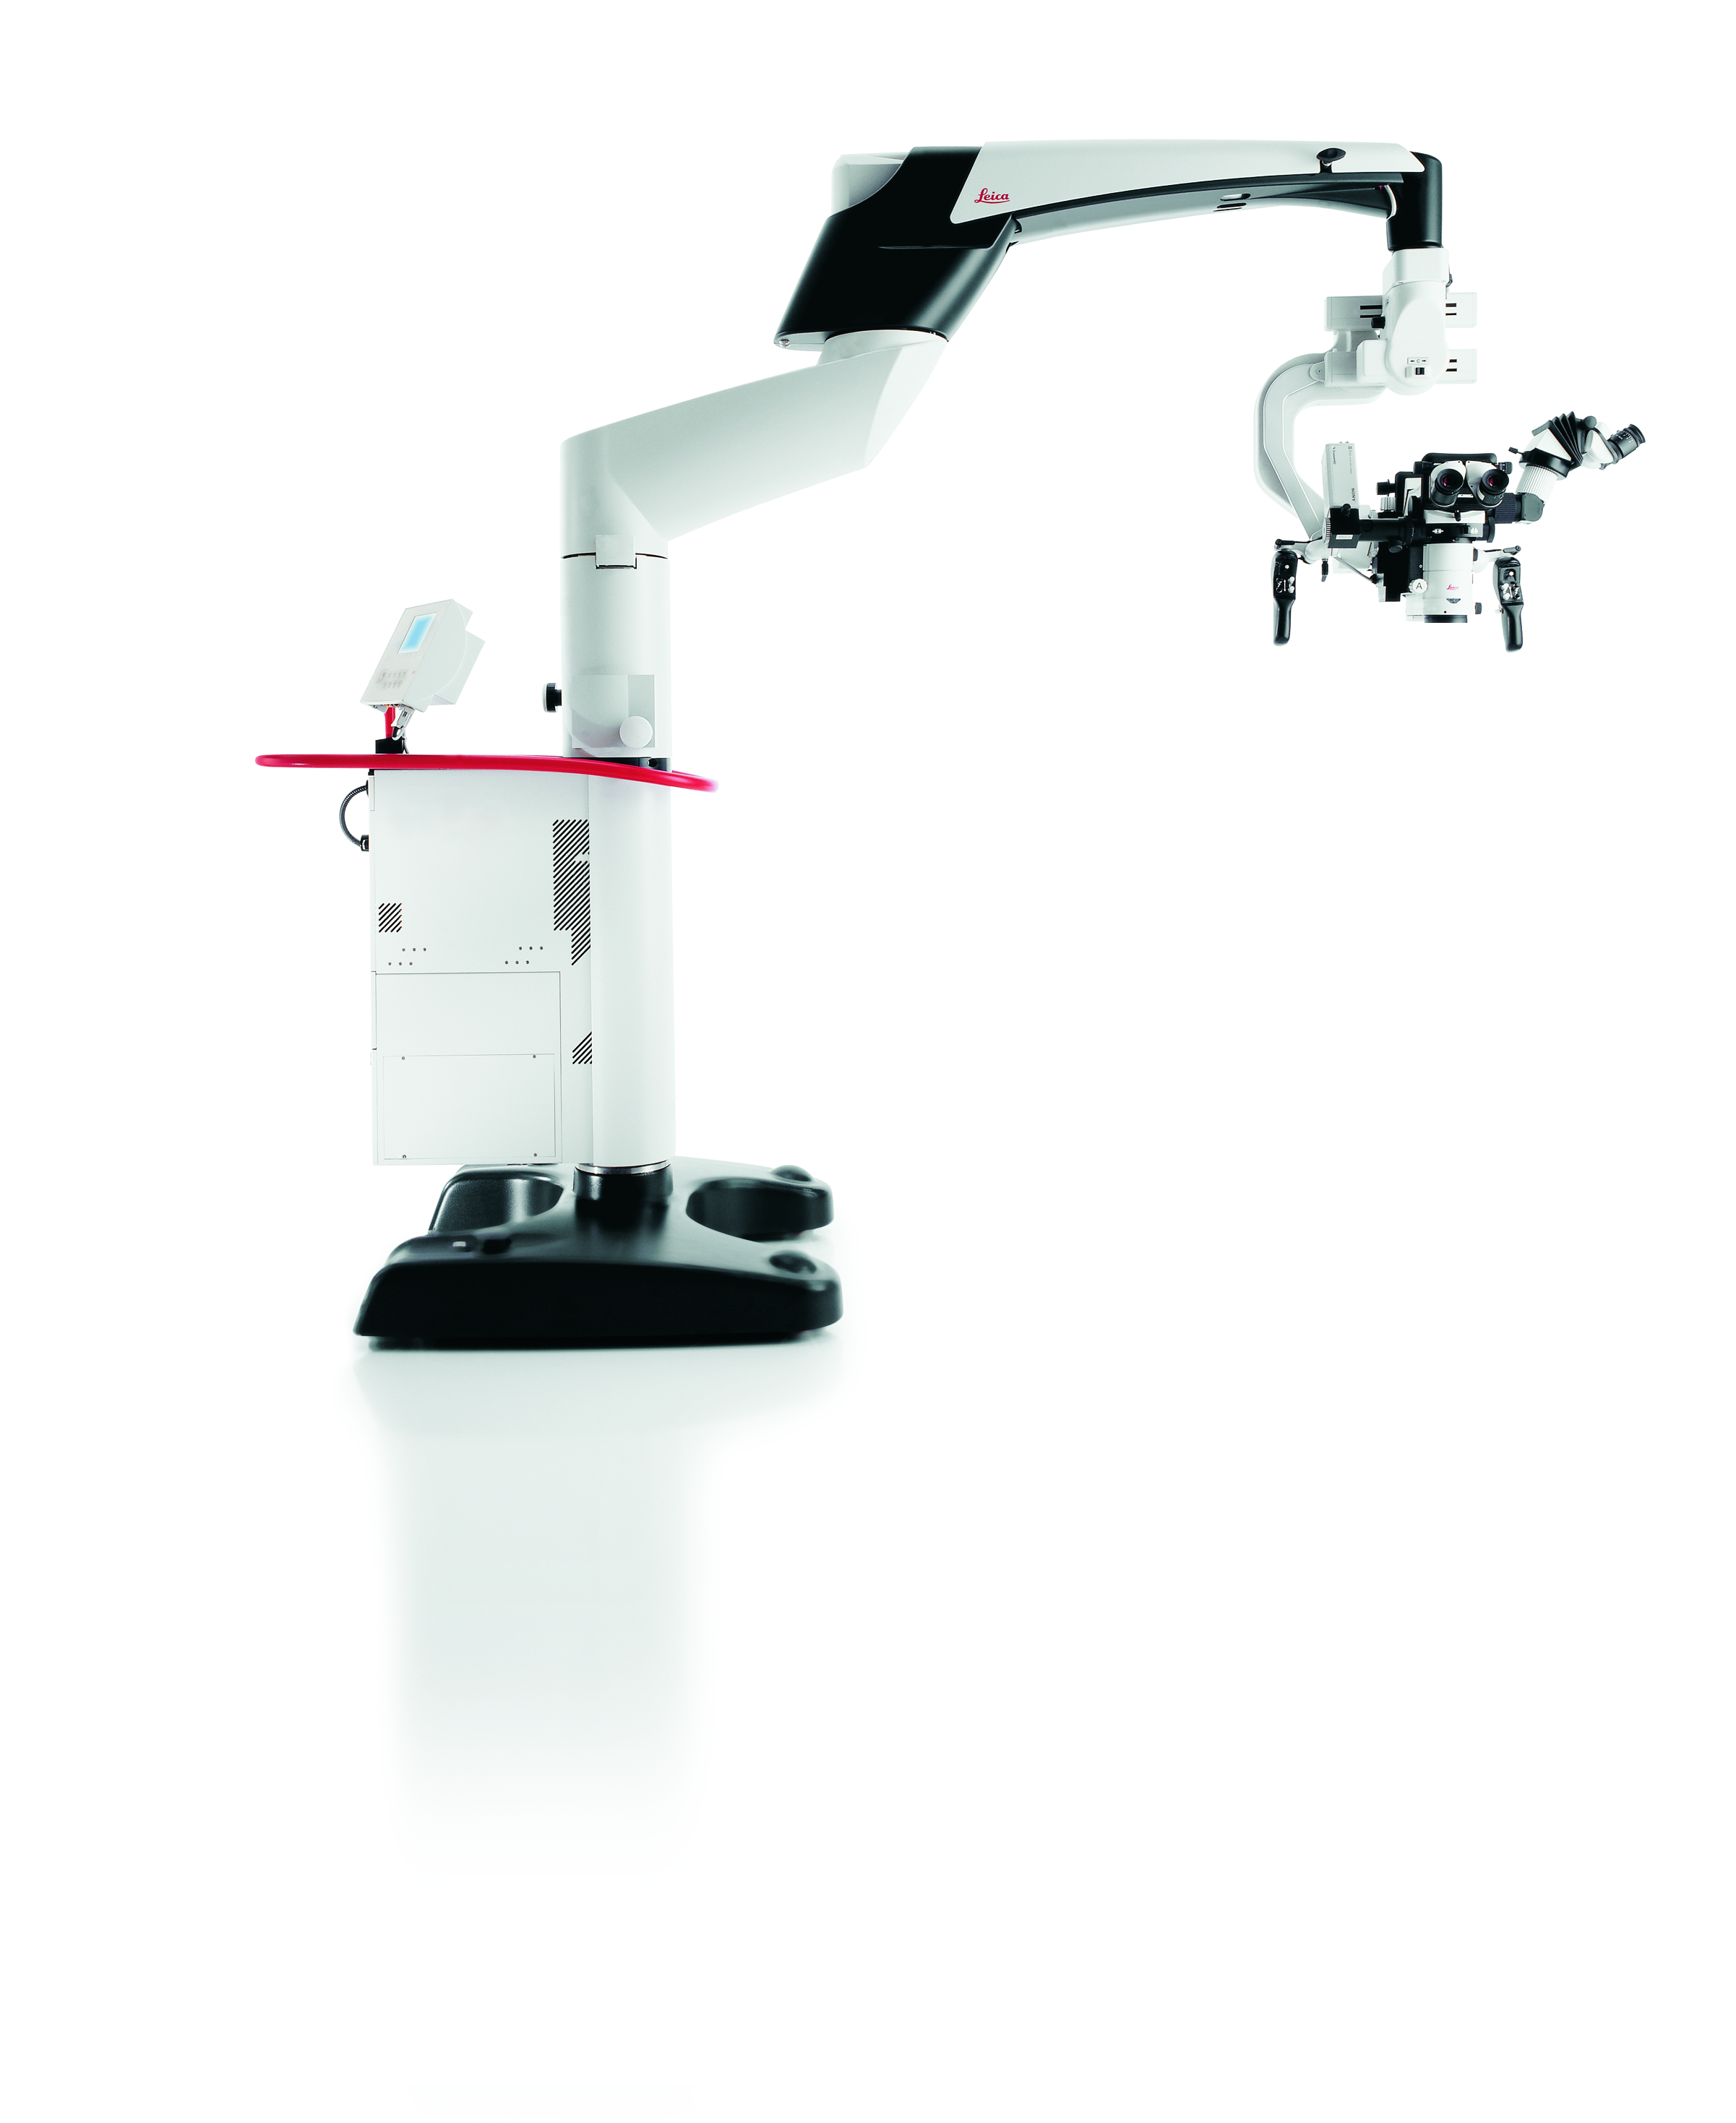 Die Operationsmikroskoplösung Leica M525 MS3 für Neurochirurgie, Wirbelsäulenchirurgie und HNO-Chirurgie.